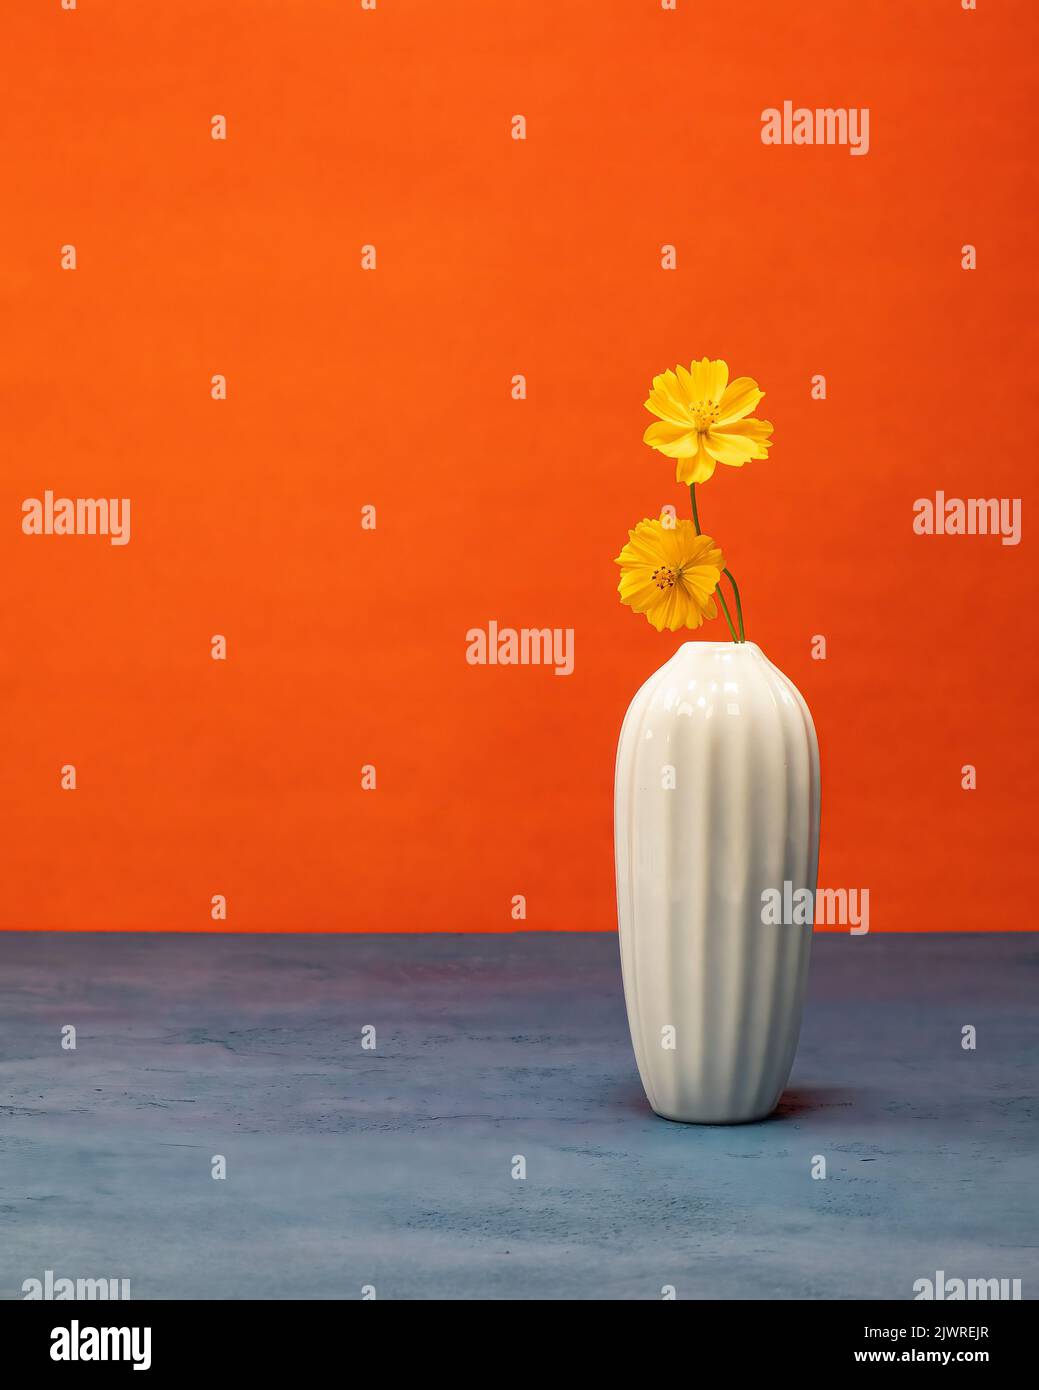 Minimalistisches Stillleben mit gelben Wildblumen in einer weißen Vase mit blauer Basis und orangefarbenem Hintergrund. Stockfoto